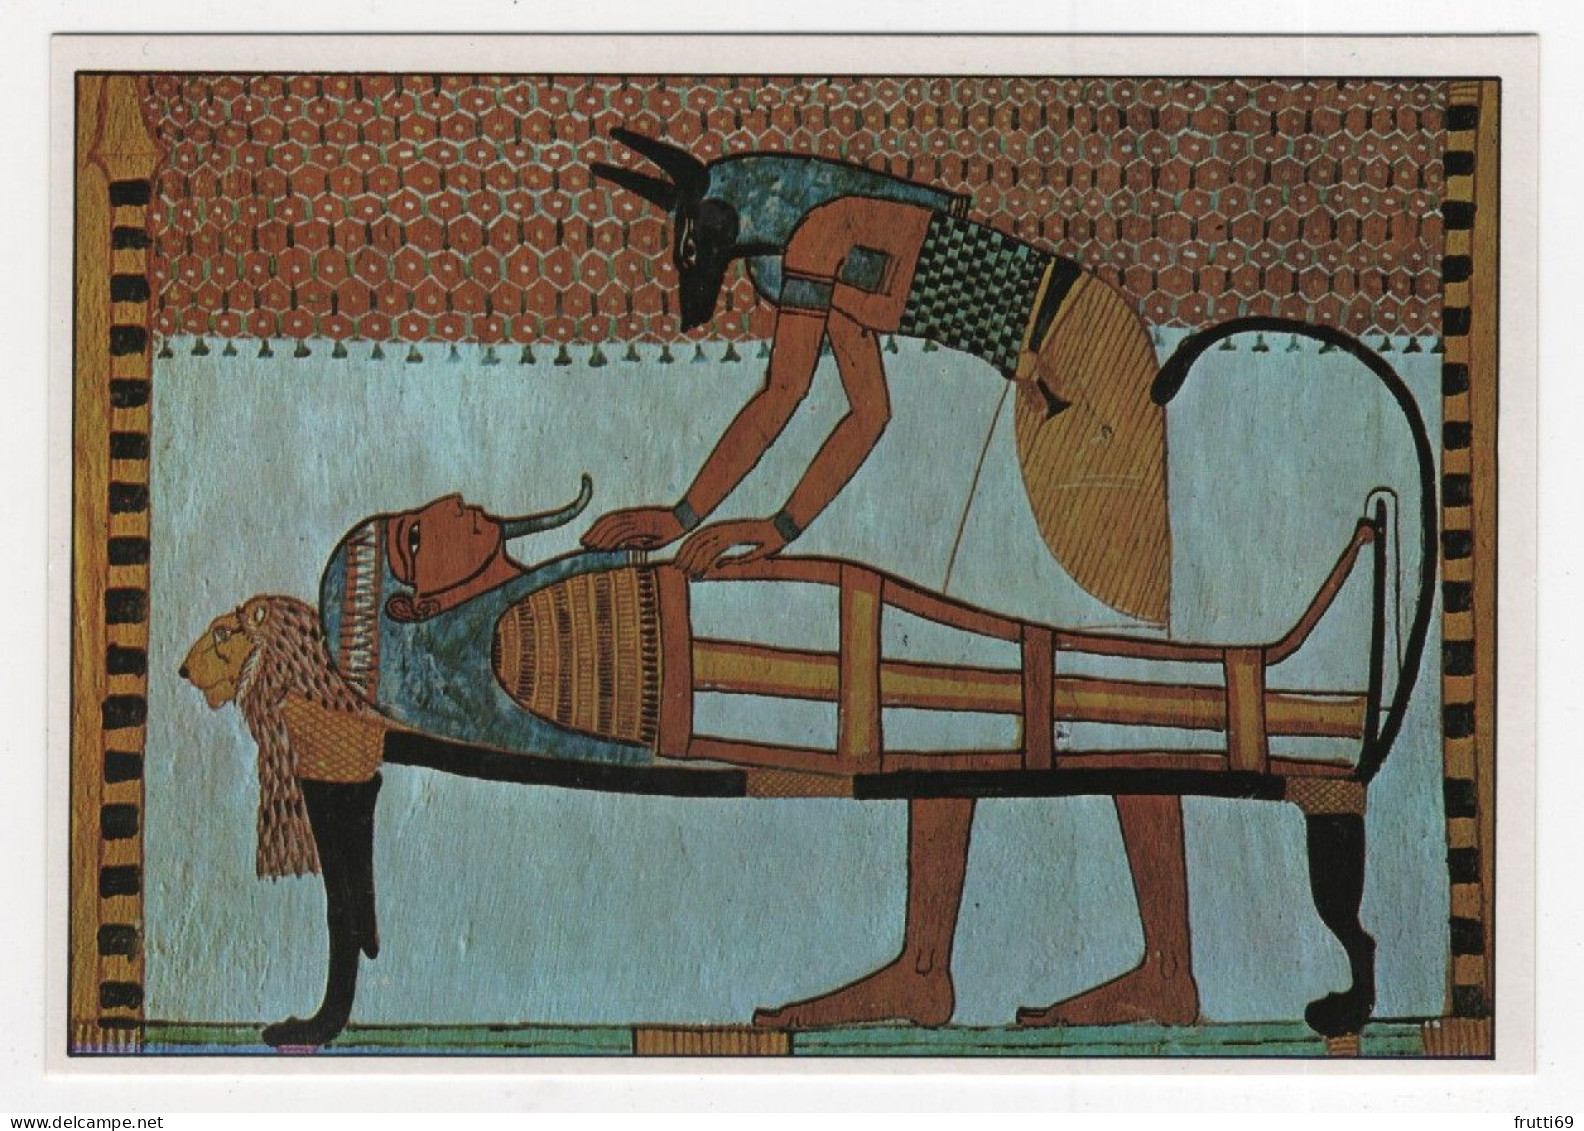 AK 210283 ART / PAINTING ... - Ägypten - Theben - Deir El-Medina - Grab Des Sennodiem -Anubis Mumifiziert Einen Leichnam - Ancient World